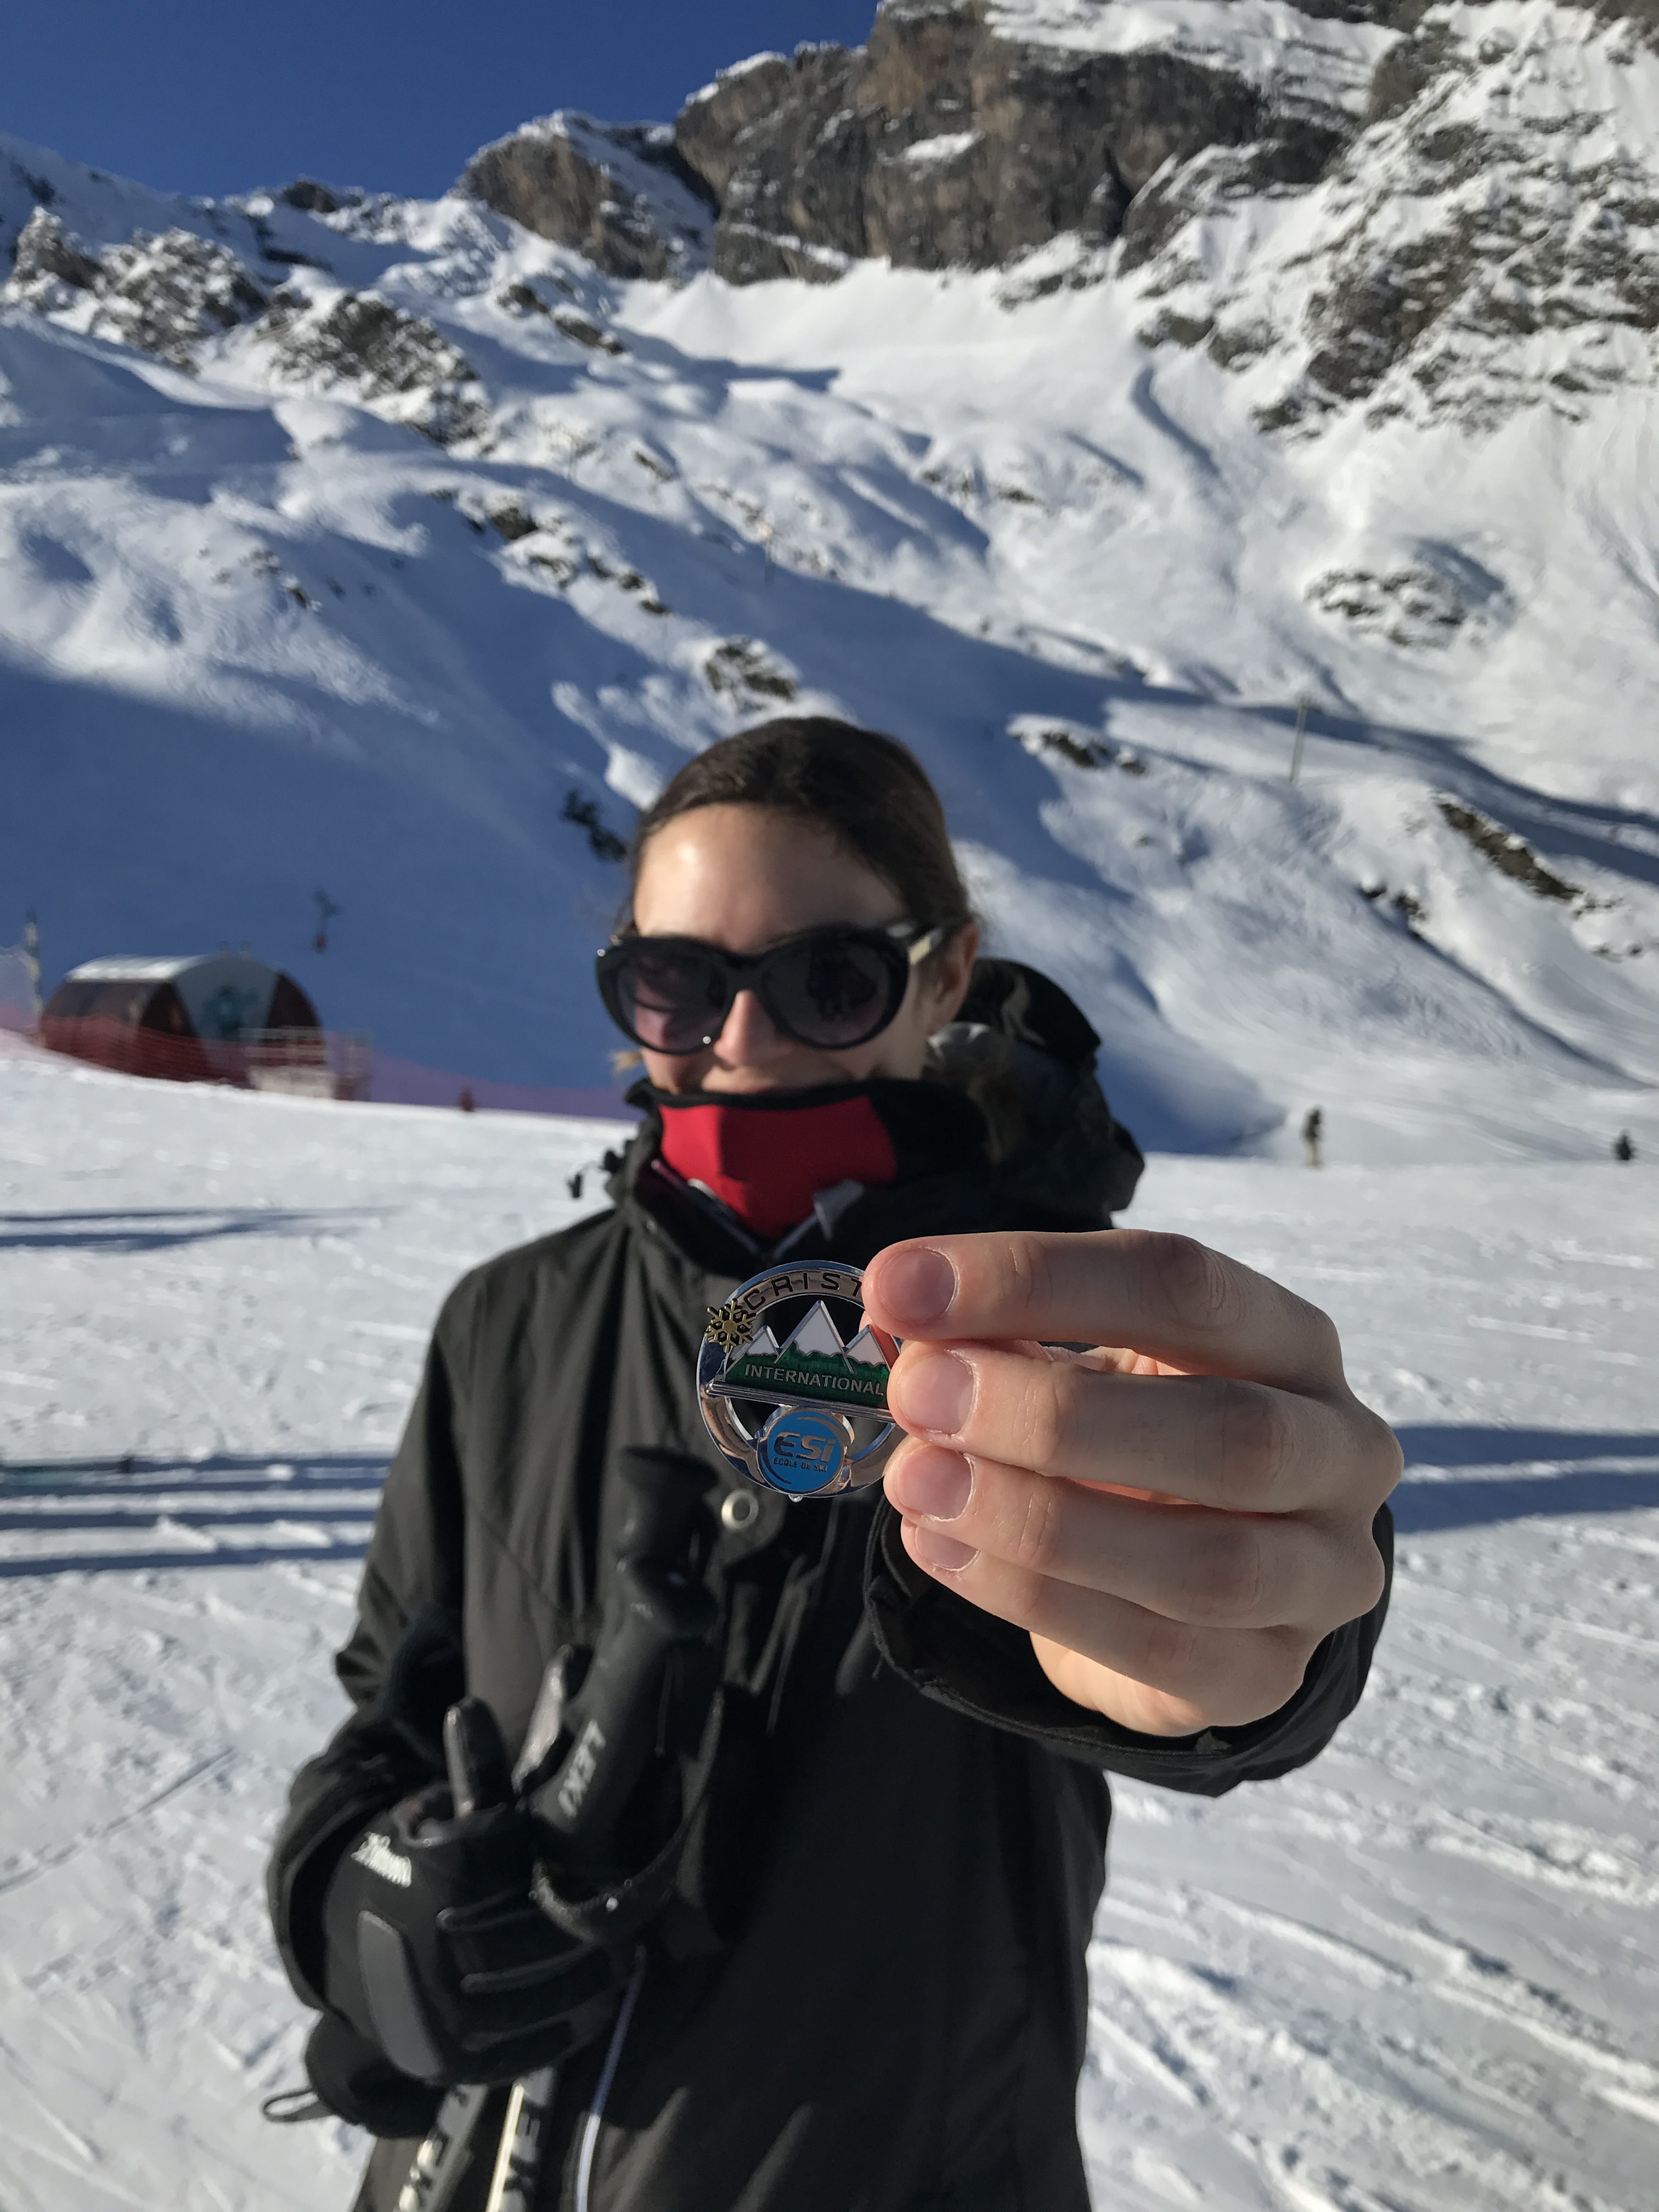 comment bien s equiper au ski